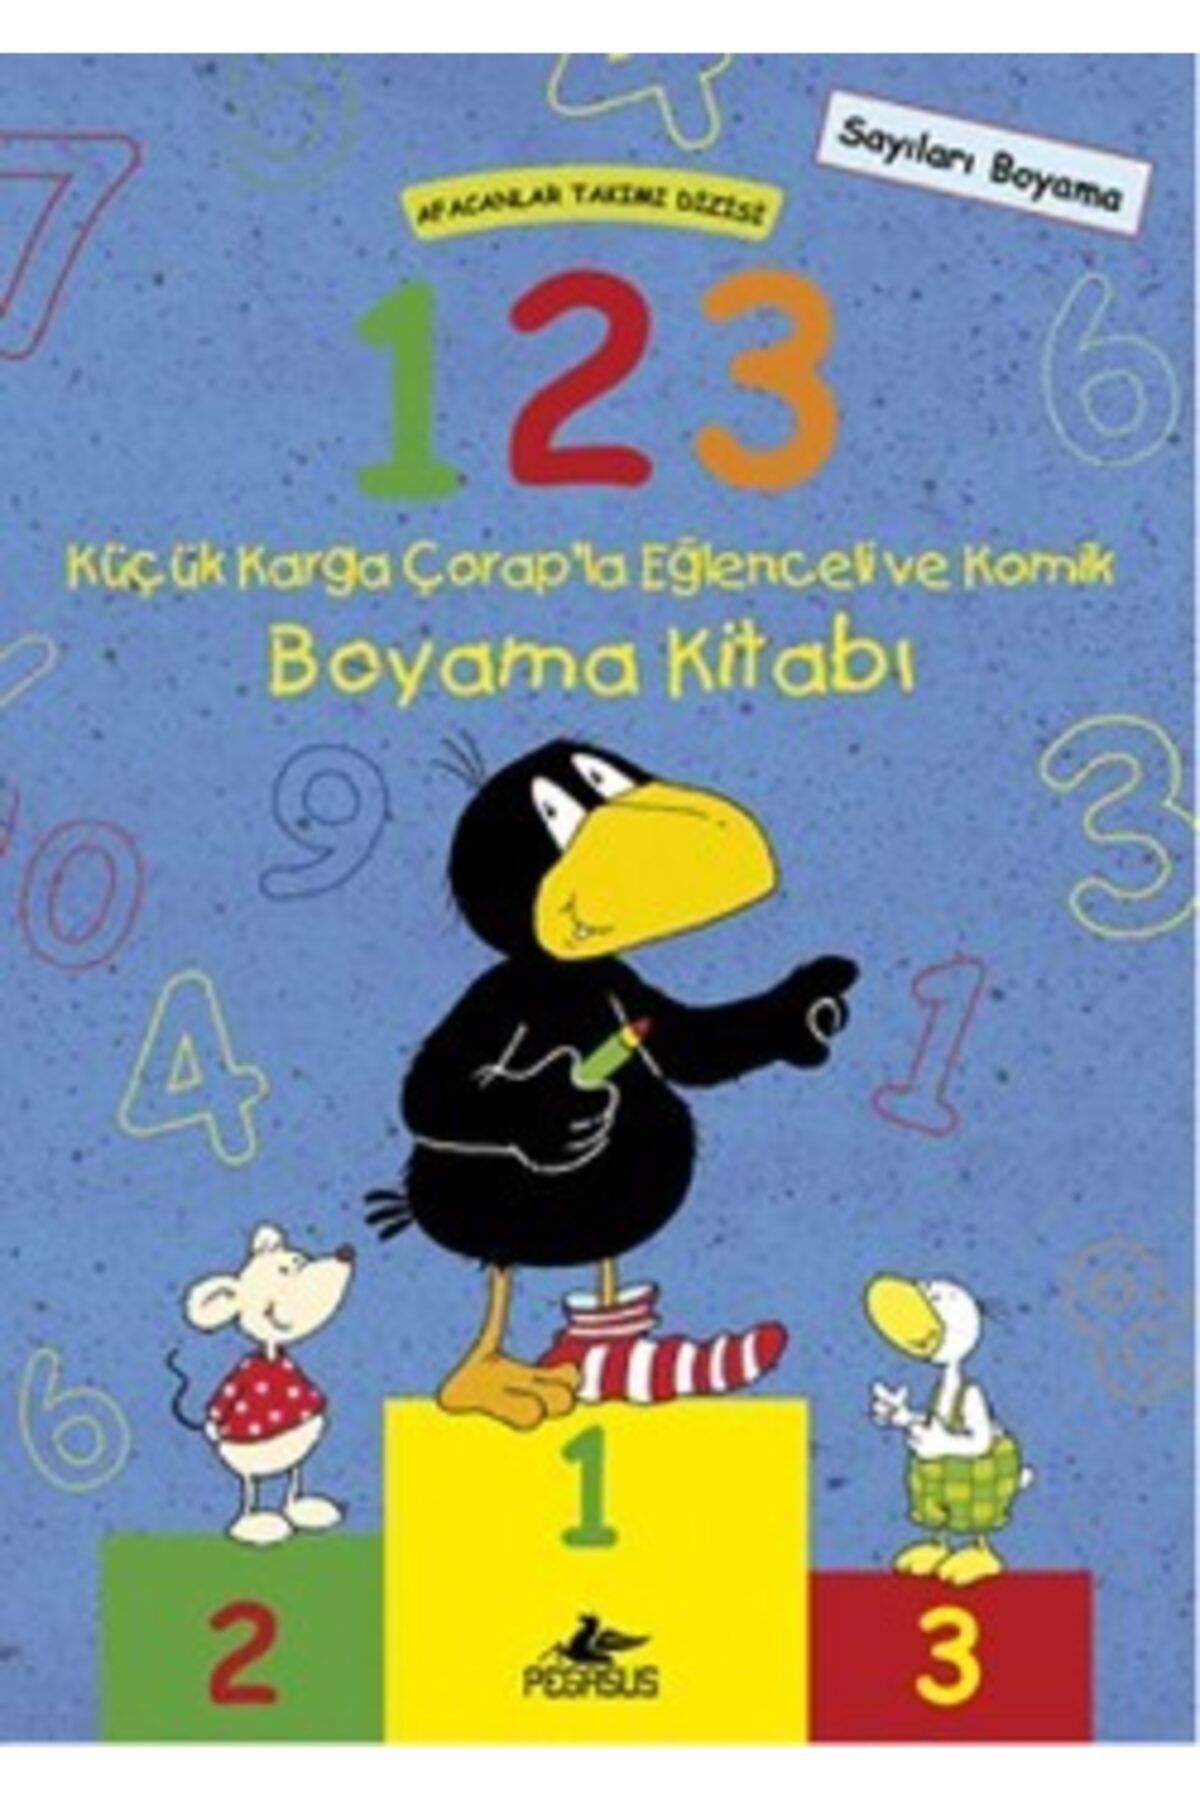 Pegasus Yayınları Afacanlar Takımı Dizisi: 1-2-3 Küçük Karga Çorap'la Eğlenceli Ve Komik Boyama Kitabı